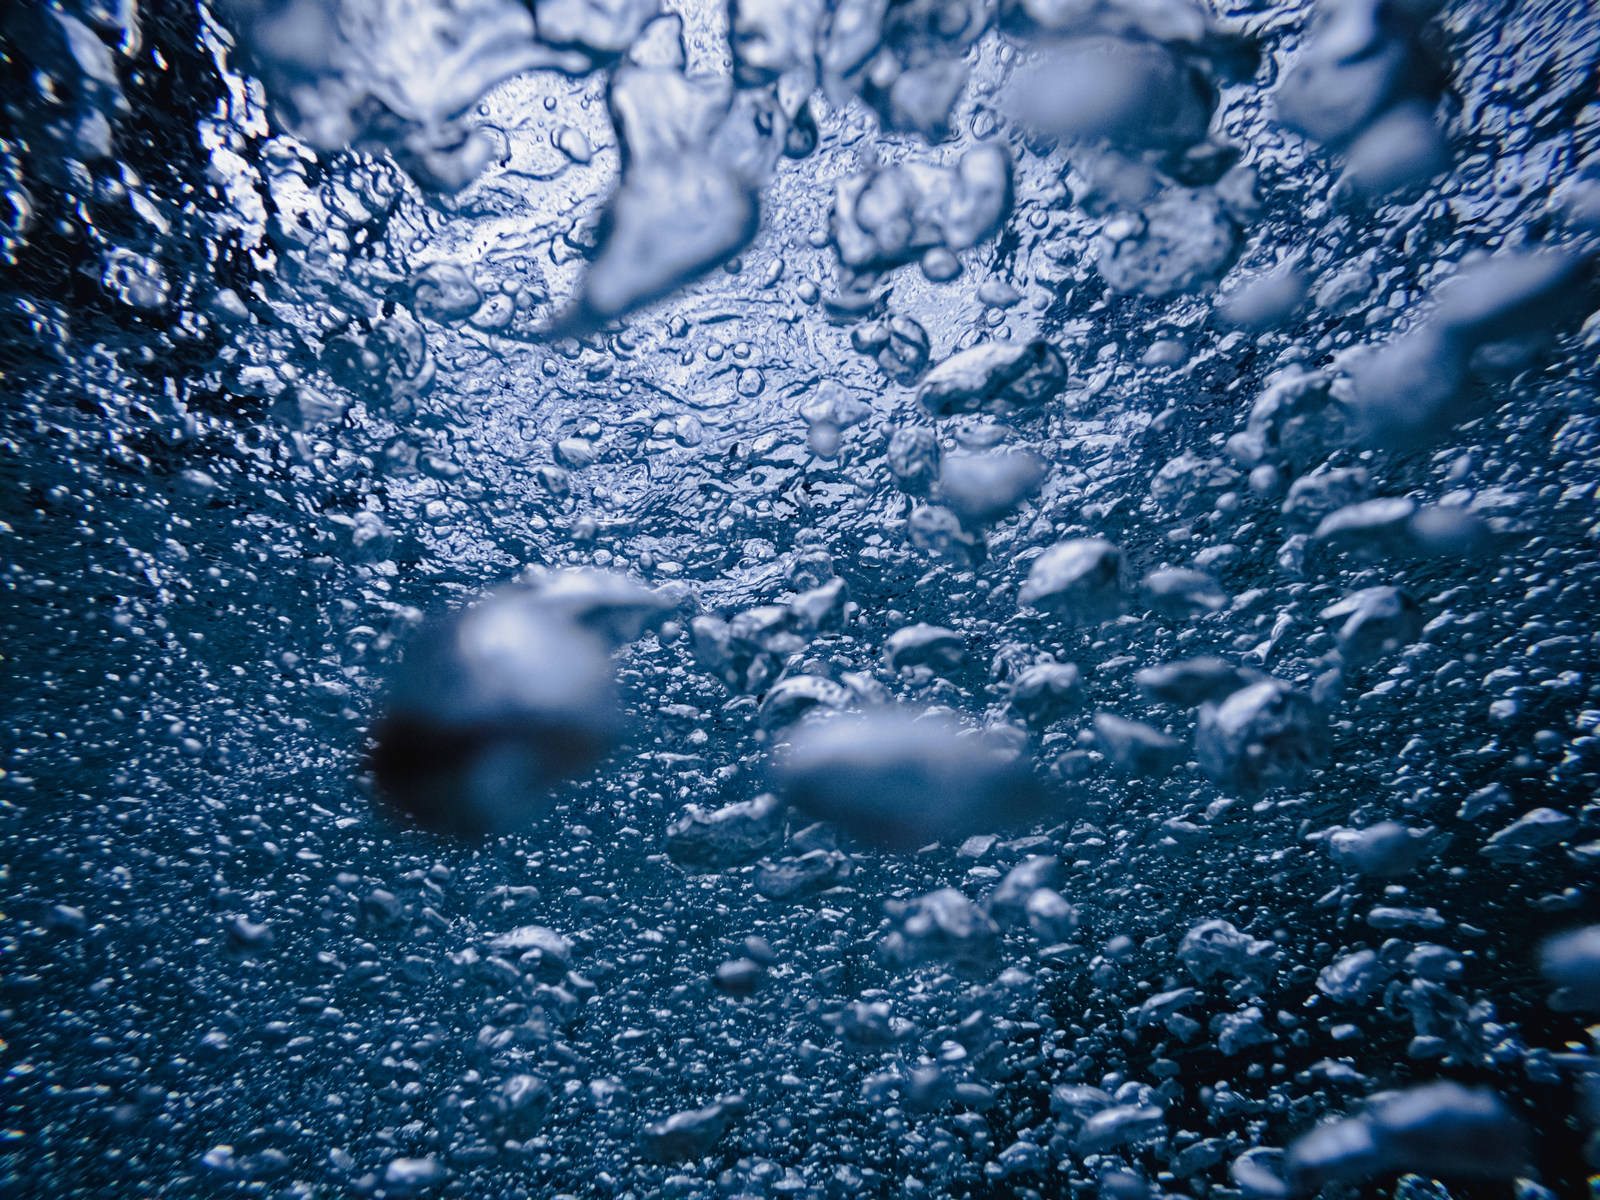 「気泡で溢れる水中のテクスチャー | フリー素材のぱくたそ」の写真